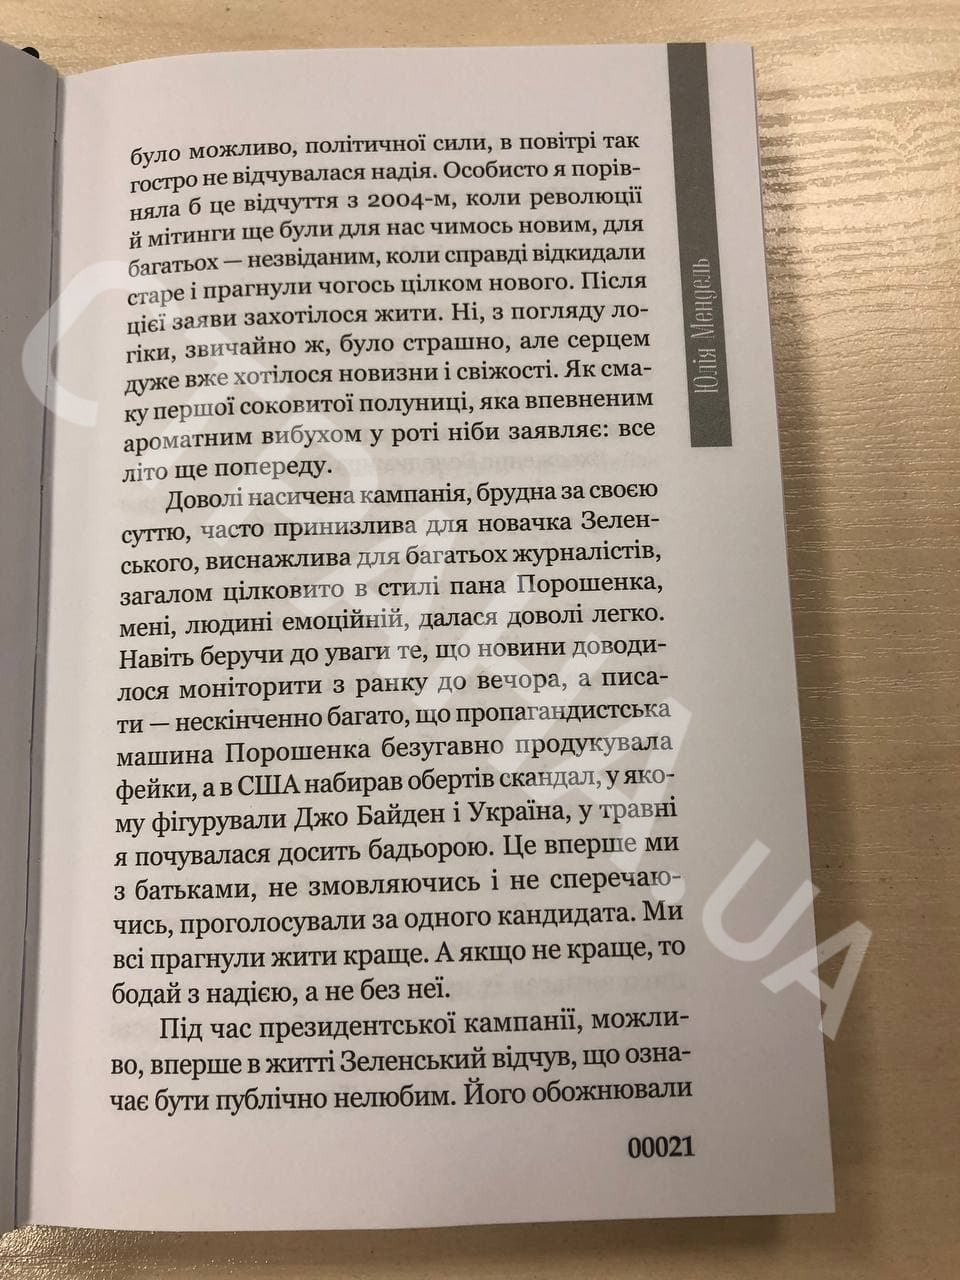 Аналогии в книге Юлии Мендель